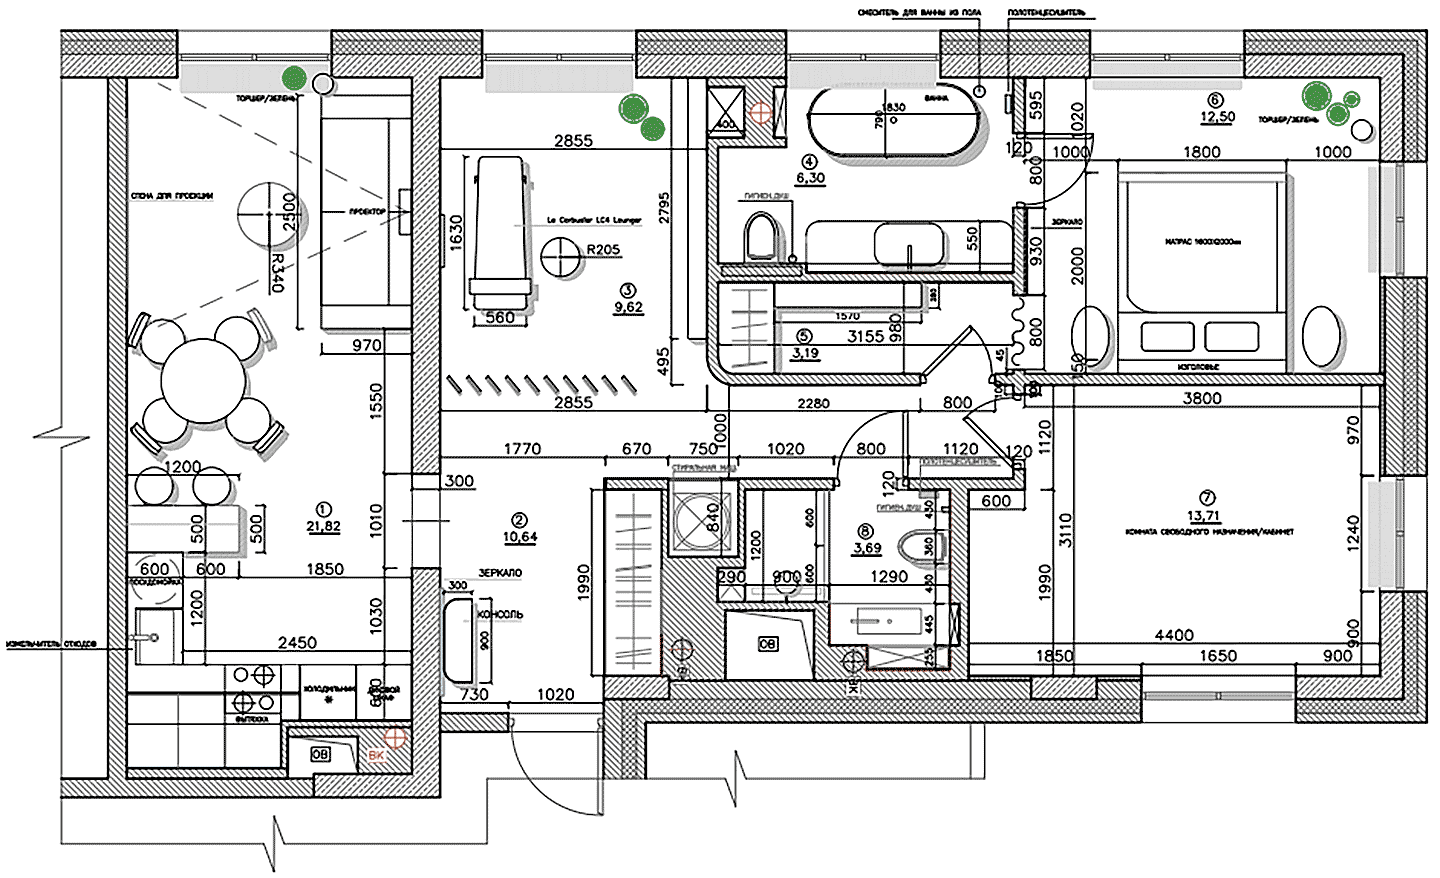 Гибкая планировка и эффектные материалы в умиротворяющем интерьере квартиры — проект бюро Muno.Design